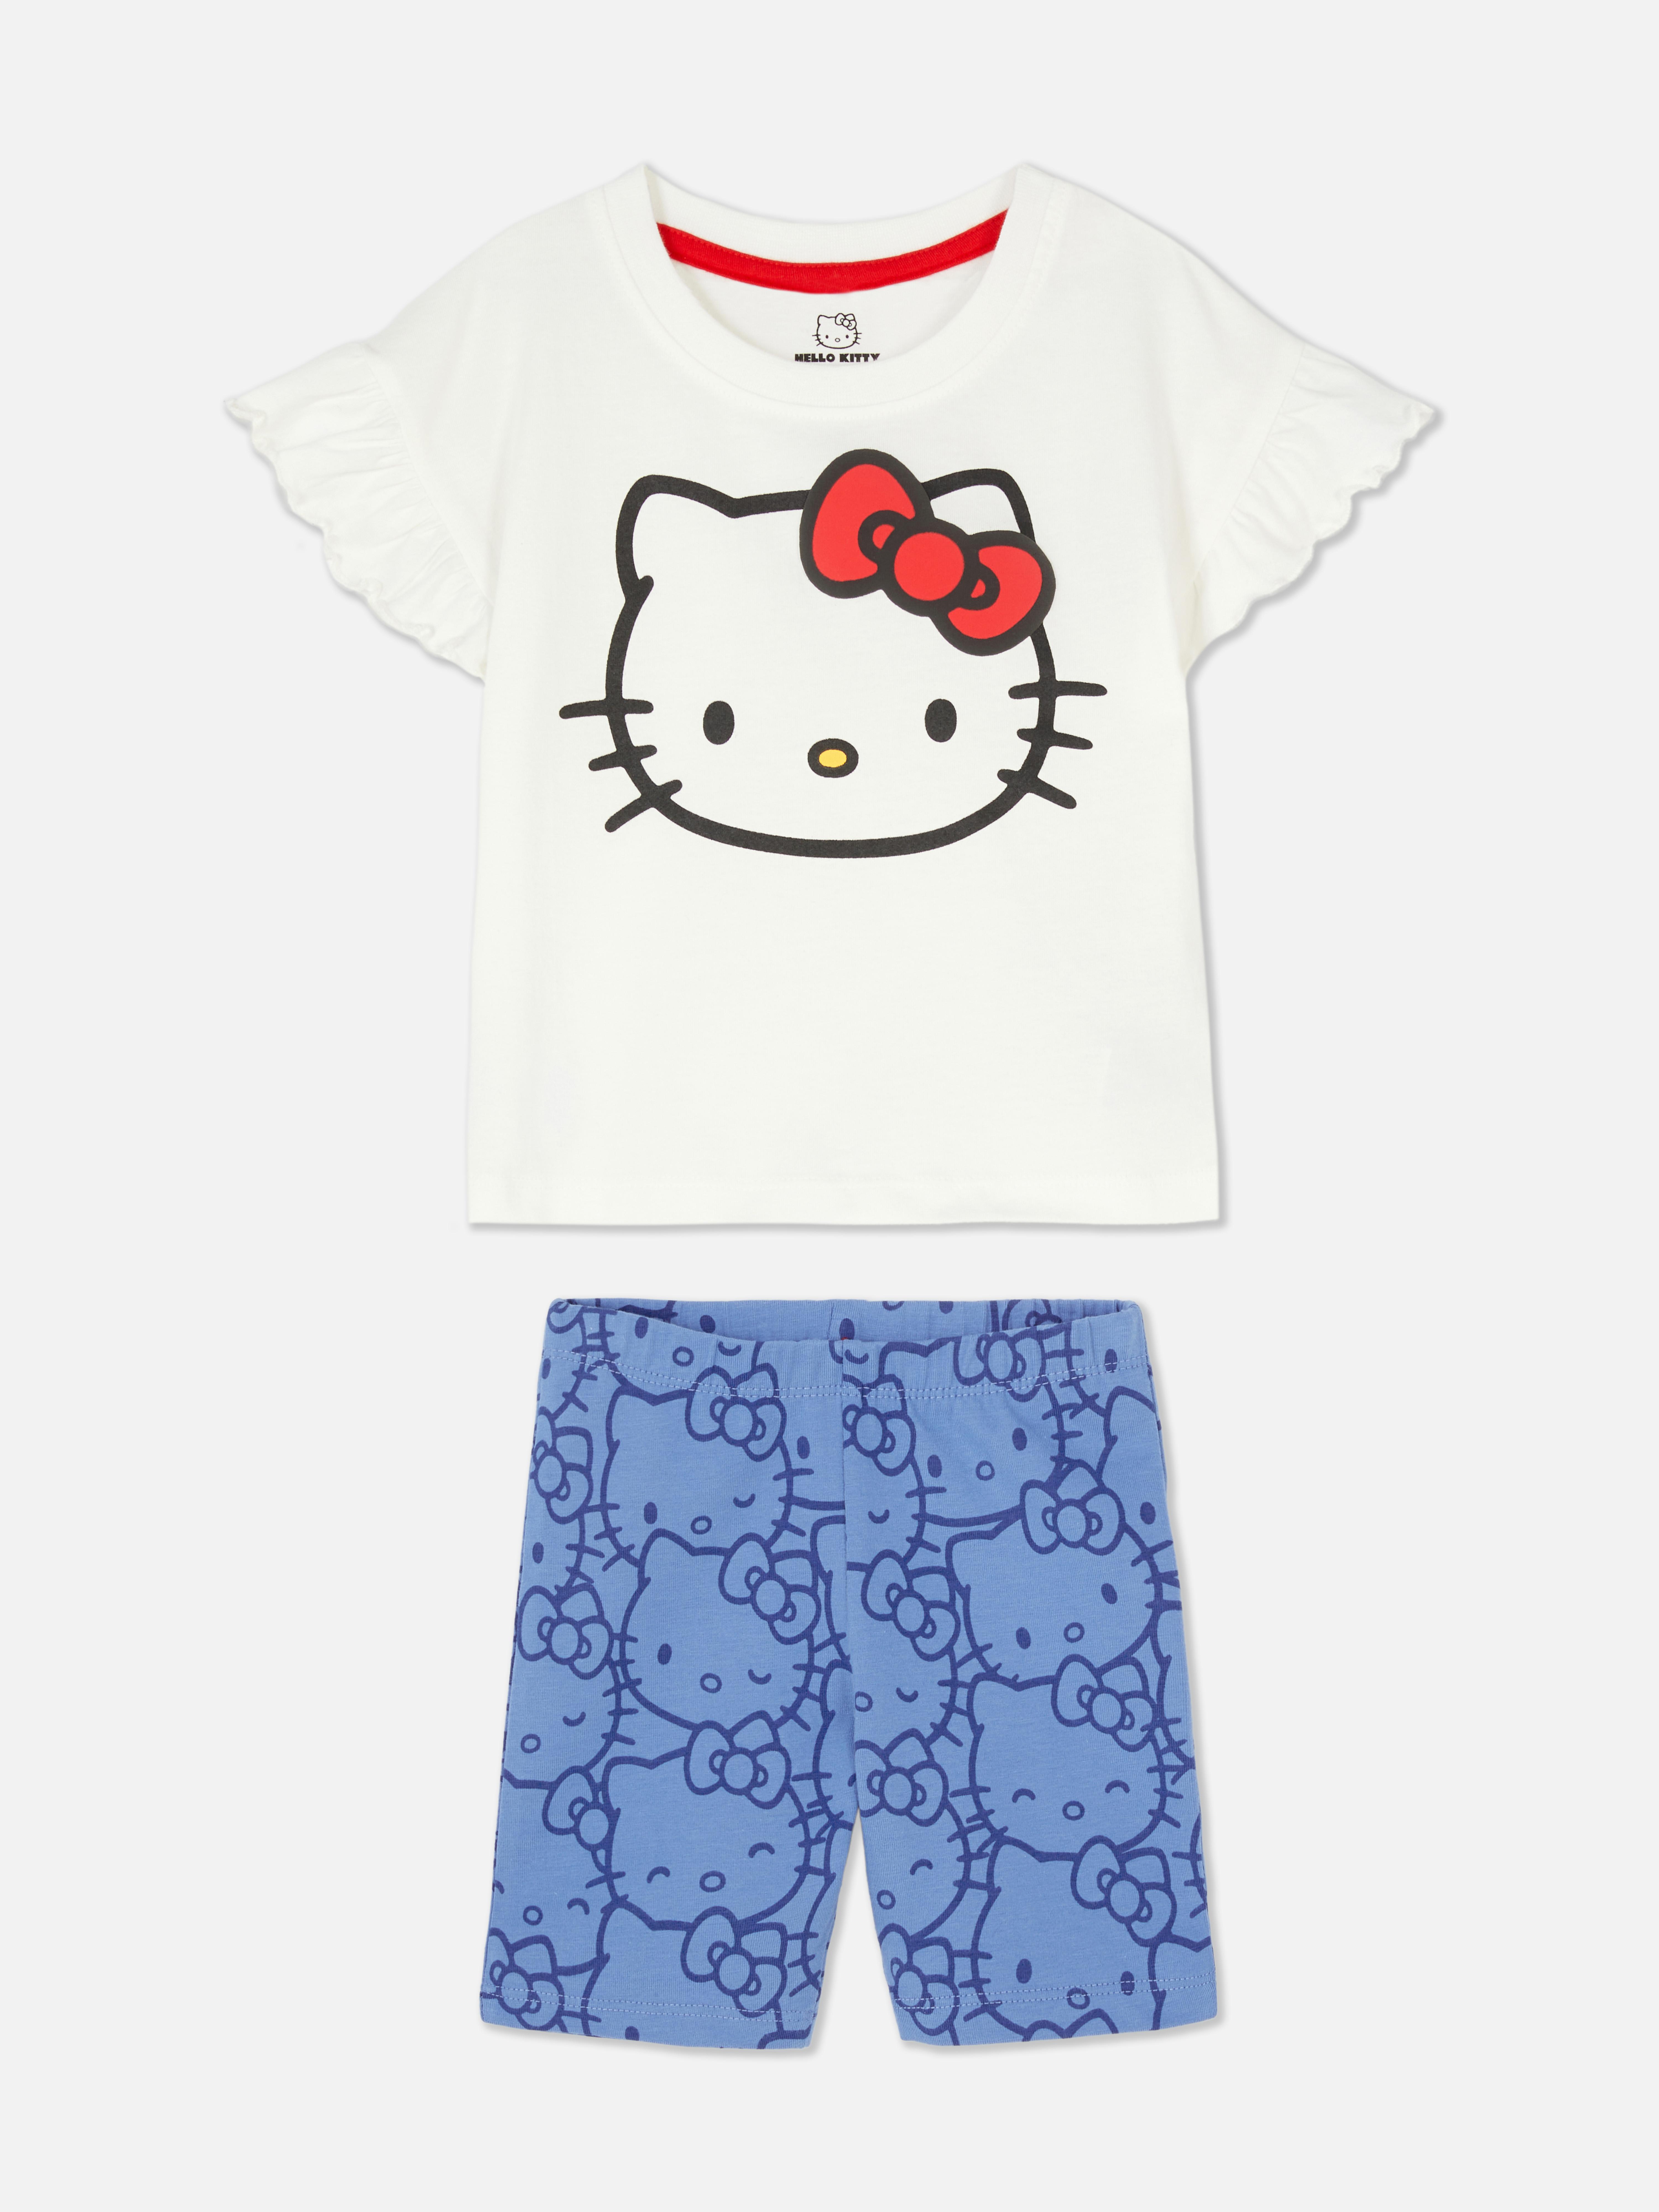 „Hello Kitty“ T-Shirt und Shorts zum 50. Jubiläum